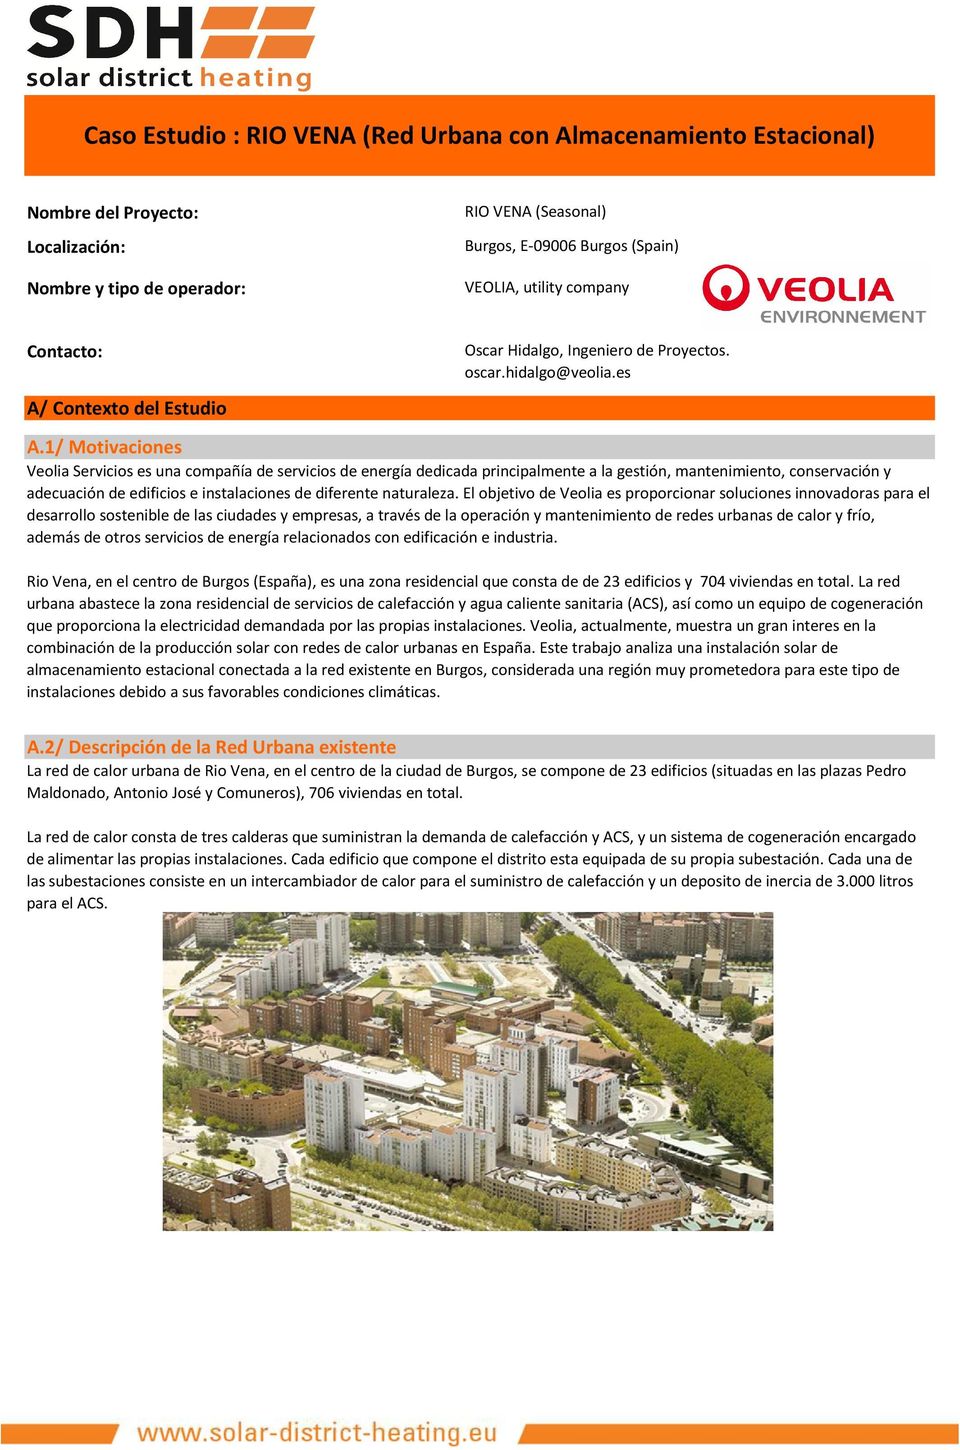 1/ Motivaciones Veolia Servicios es una compañía de servicios de energía dedicada principalmente a la gestión, mantenimiento, conservación y adecuación de edificios e instalaciones de diferente